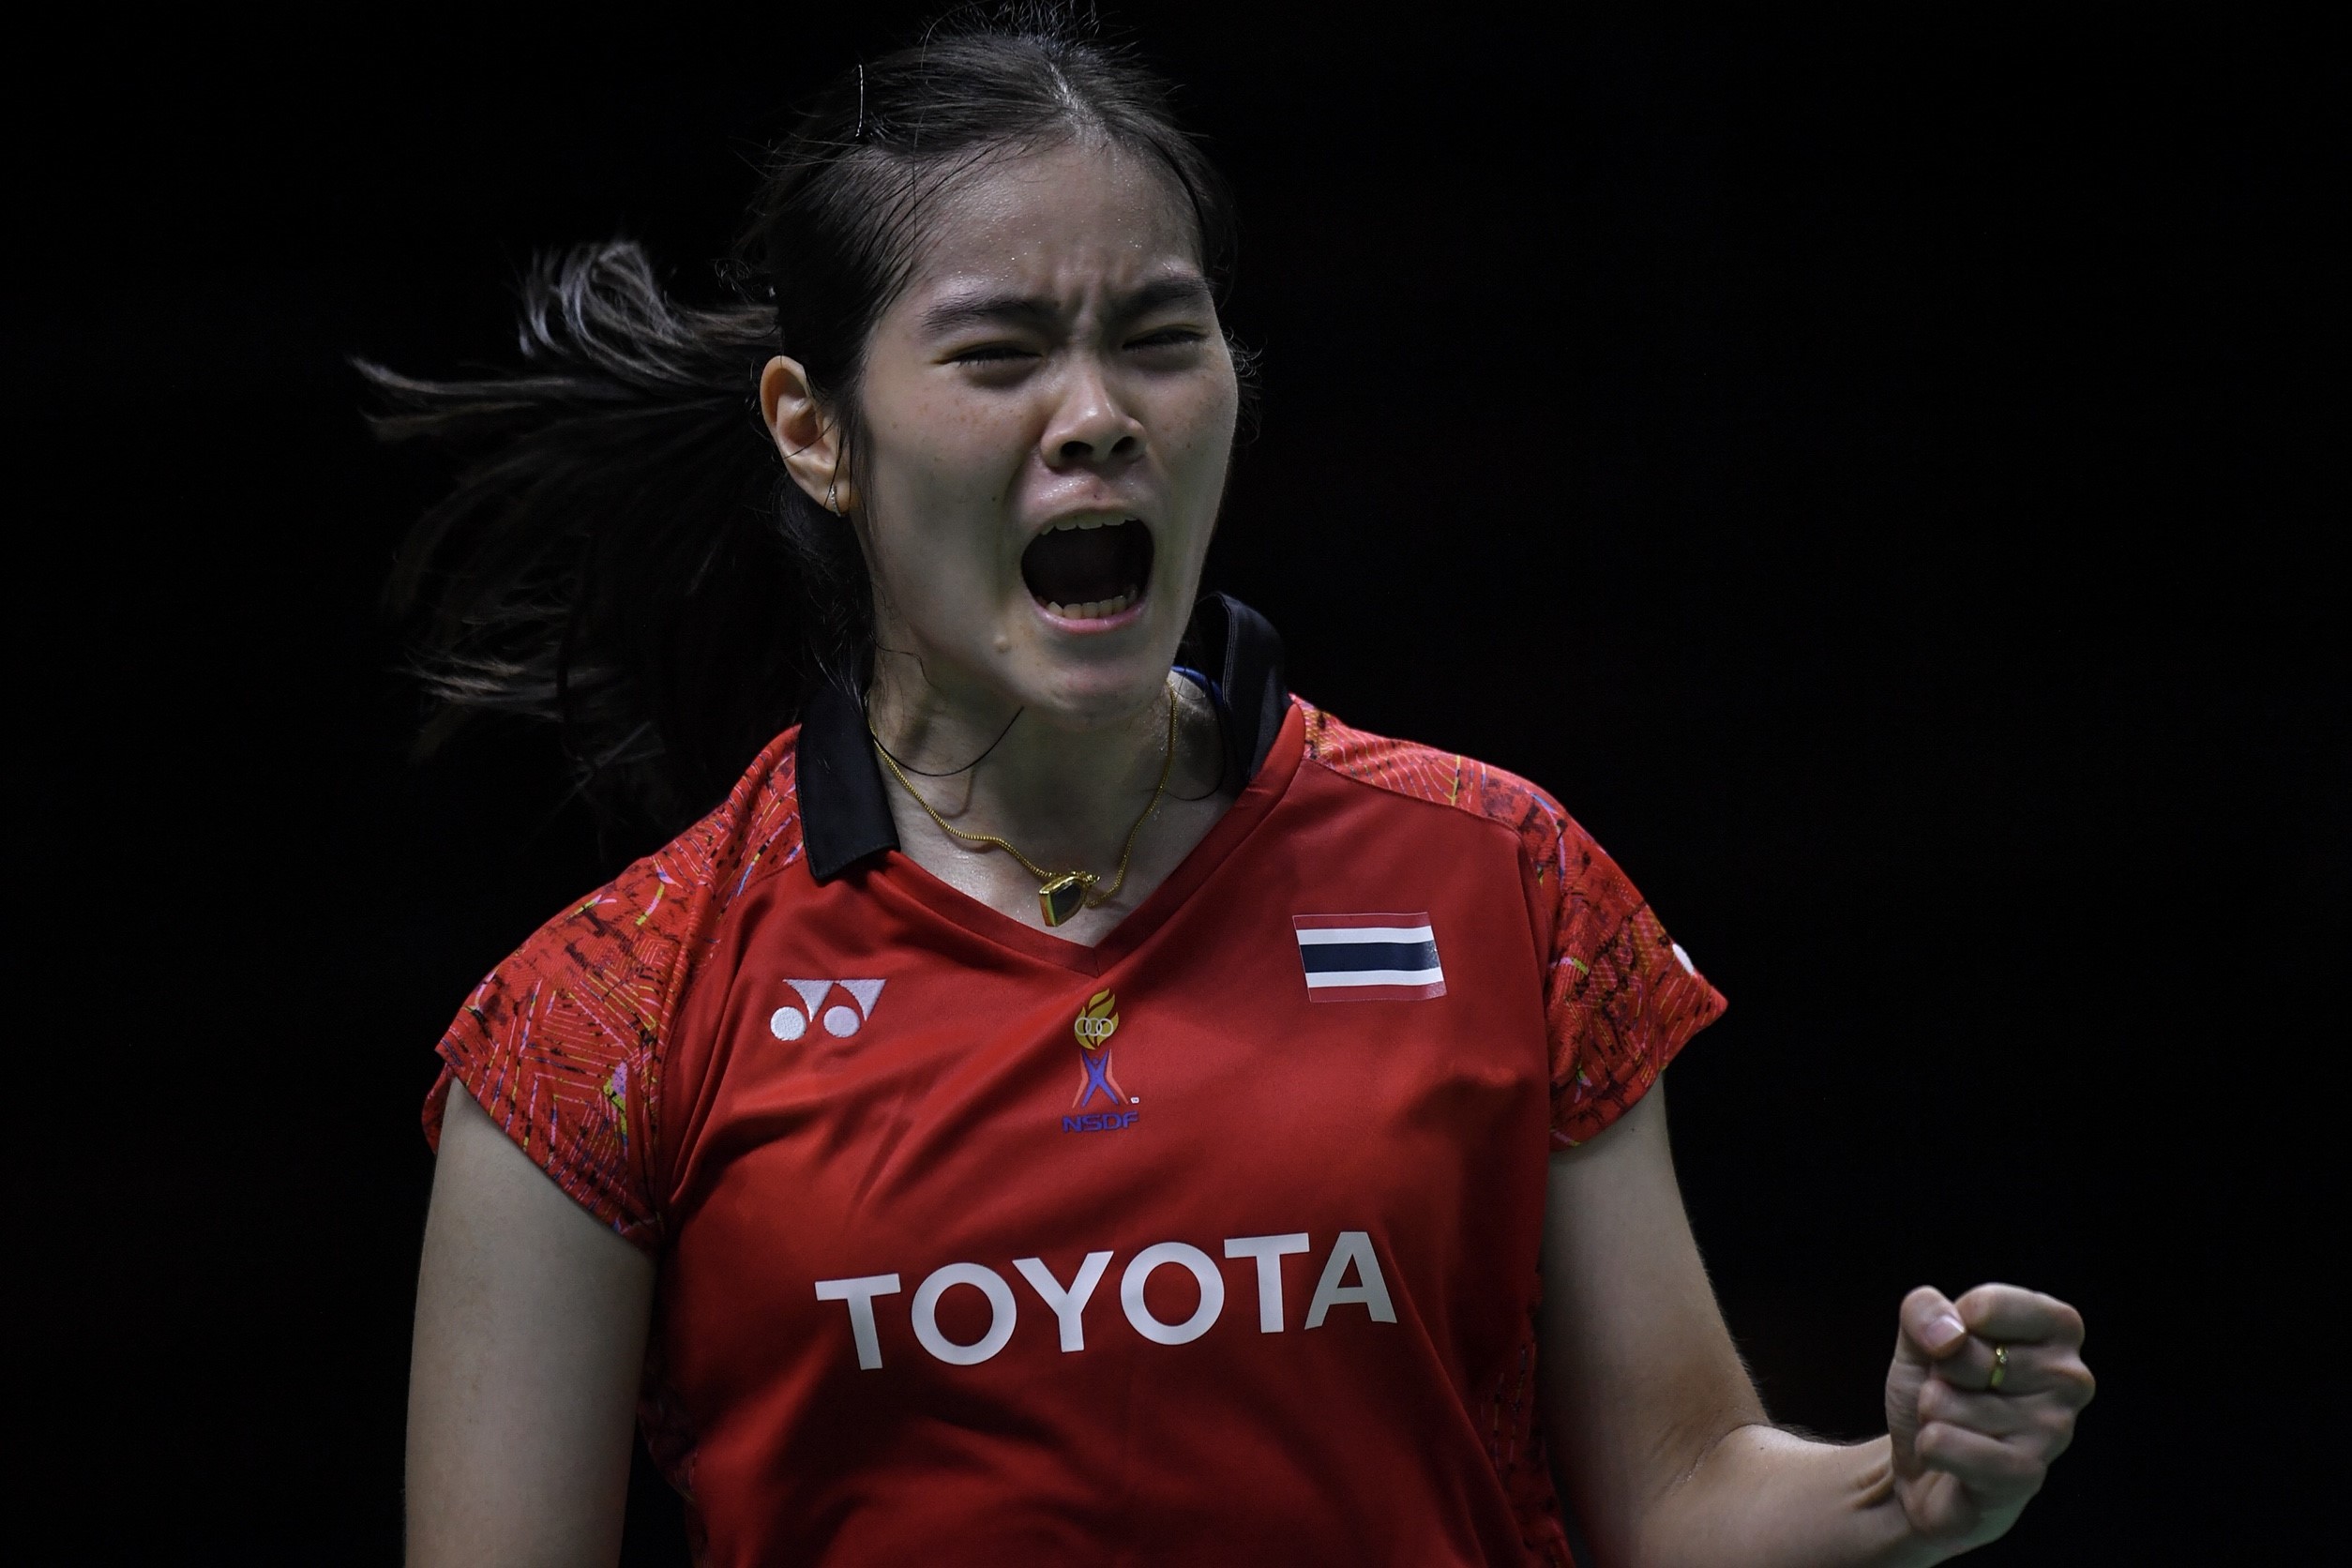 สาวไทยรวมพลังตบแซงชนะอินโดฯ 3-2 คู่ ทะลุเข้ารอบรองฯชนศึกหนักทีมเต็ง 2 จีน    